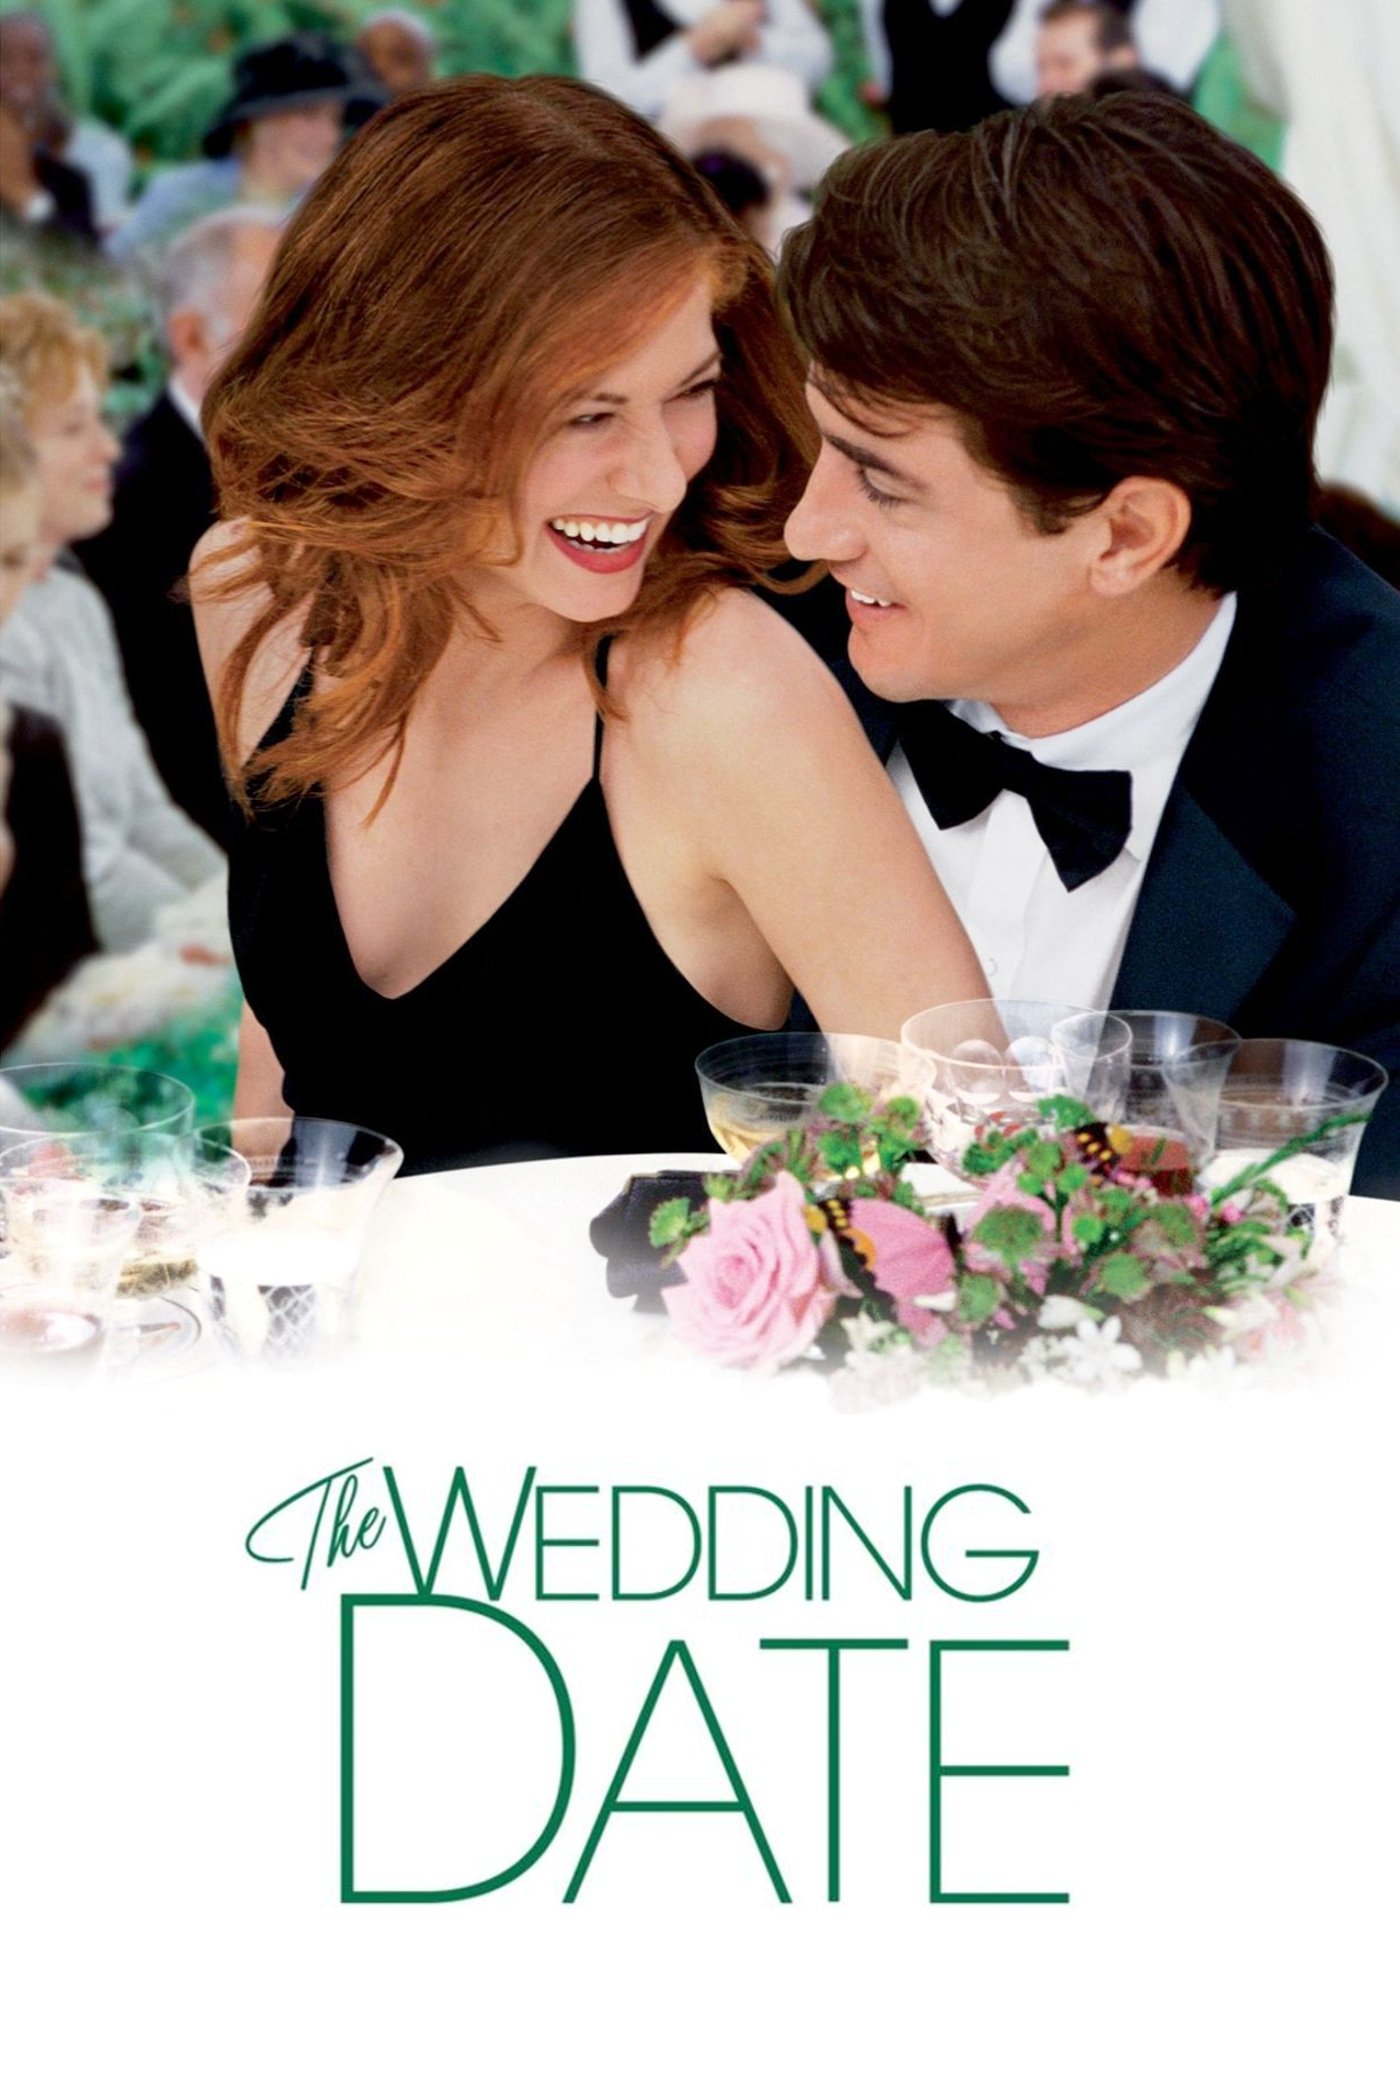 Plakat von "Wedding Date"